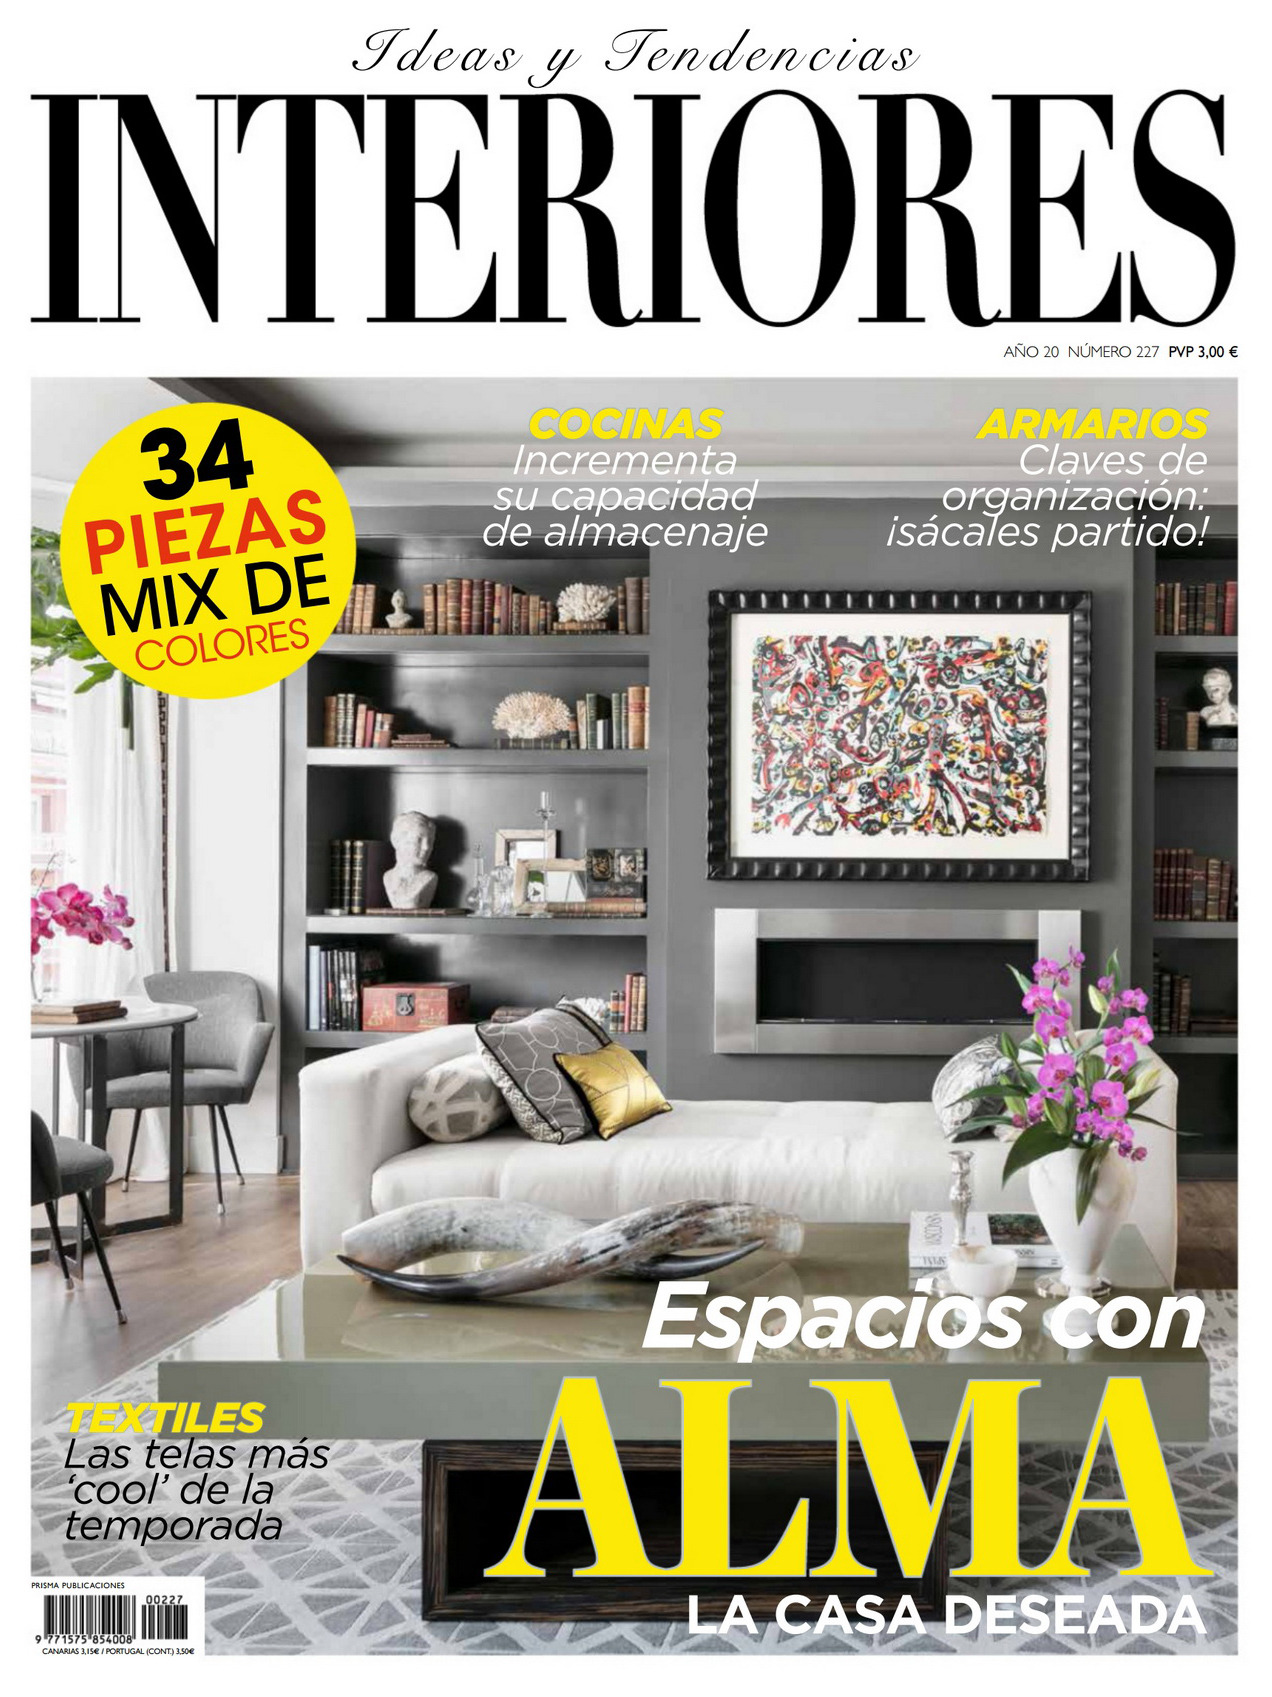 《Interiores》西班牙室内时尚杂志2020年03月号